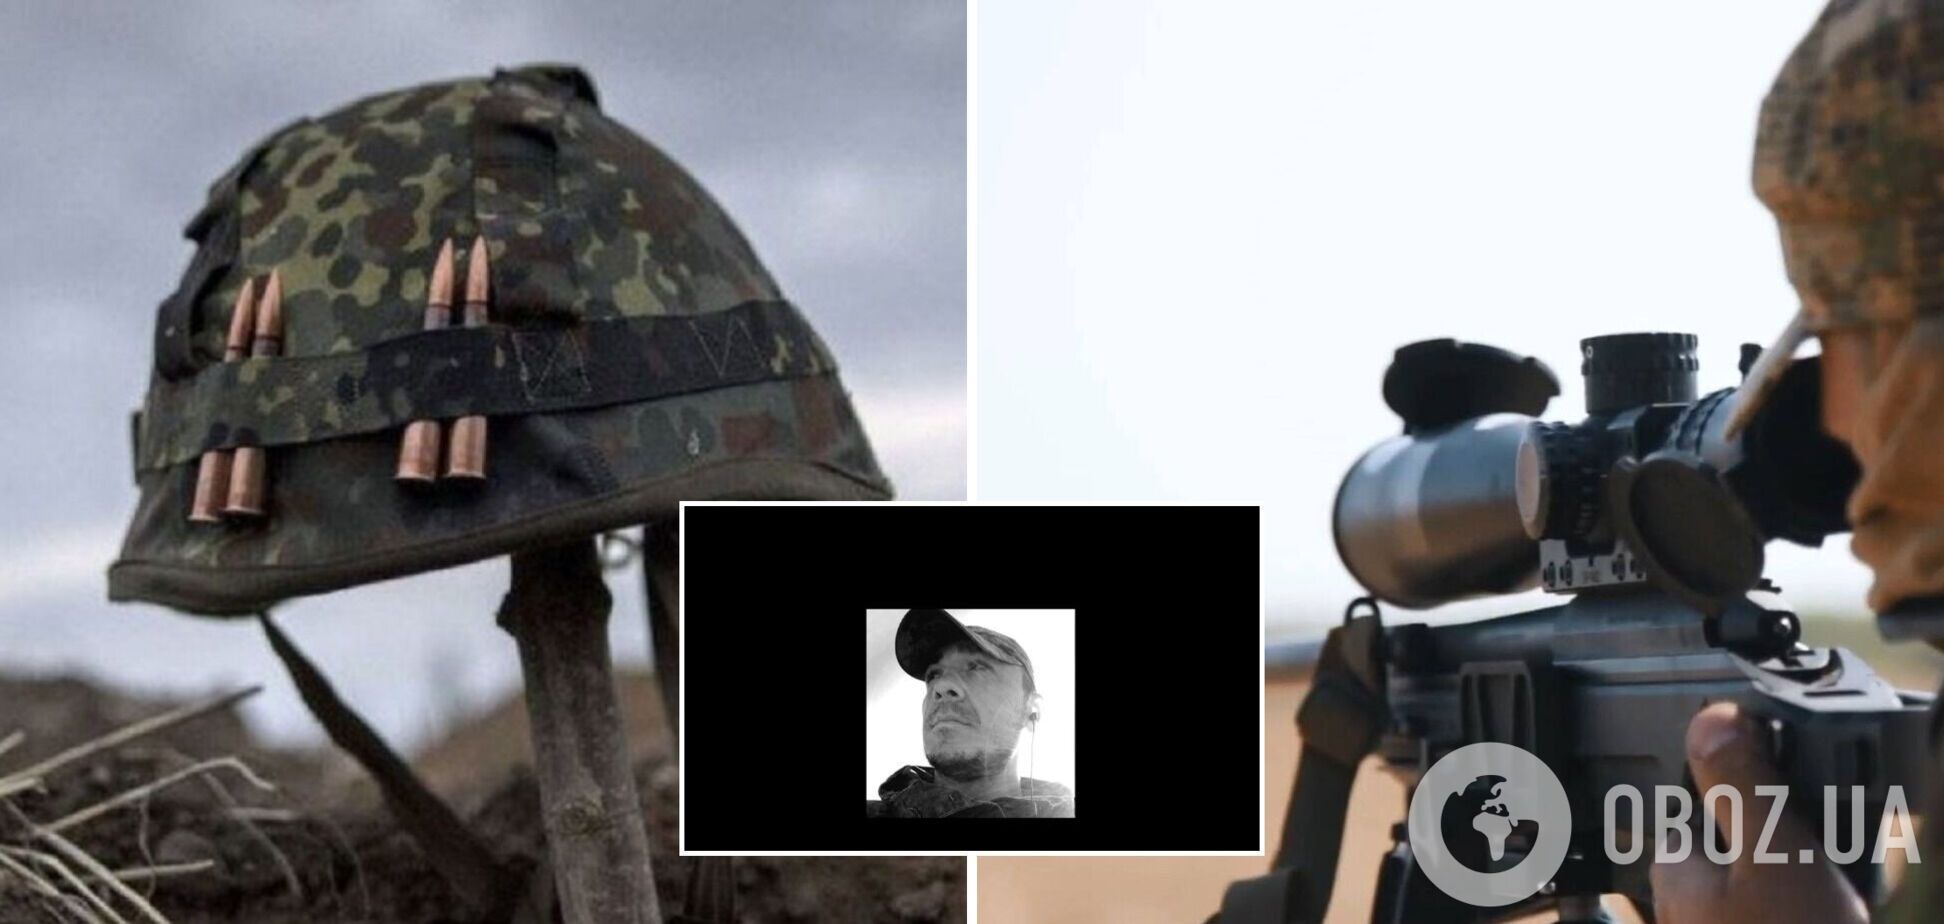 Названо имя украинского разведчика, убитого снайпером на Донбассе. Фото